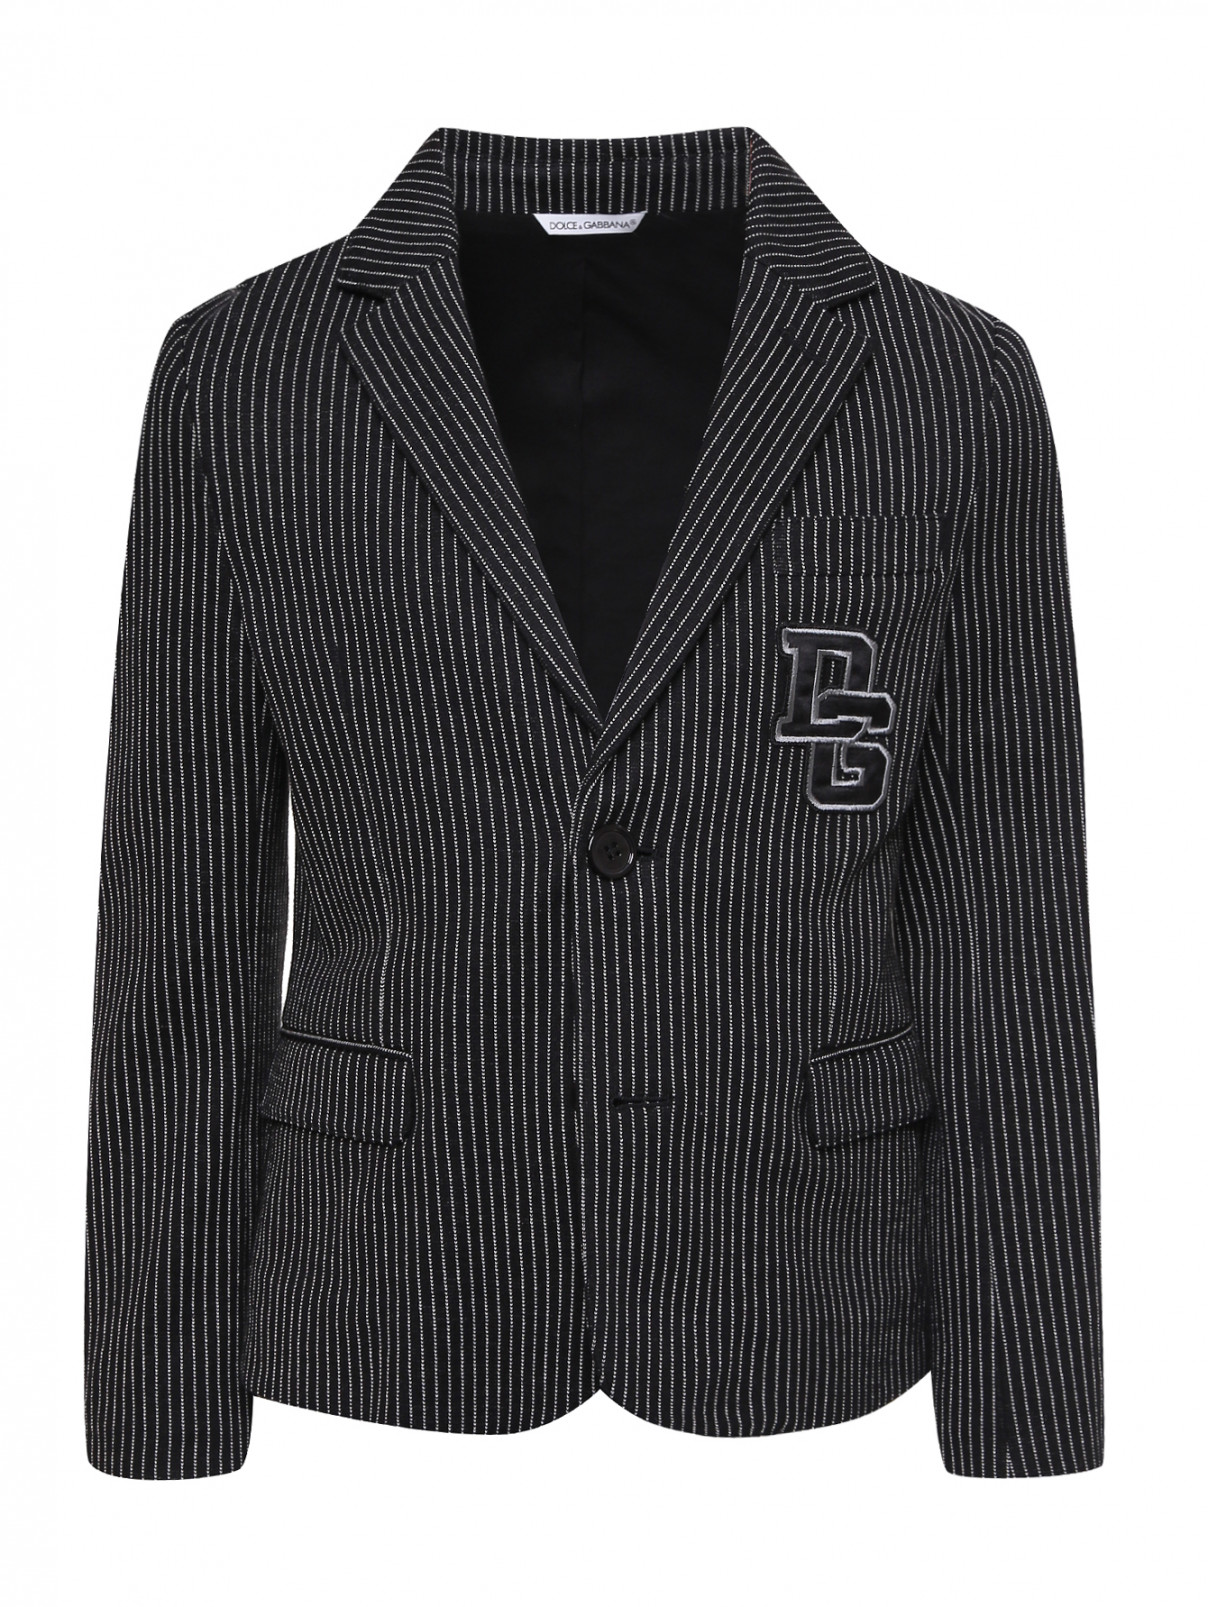 Пиджак трикотажный в полоску Dolce & Gabbana  –  Общий вид  – Цвет:  Черный